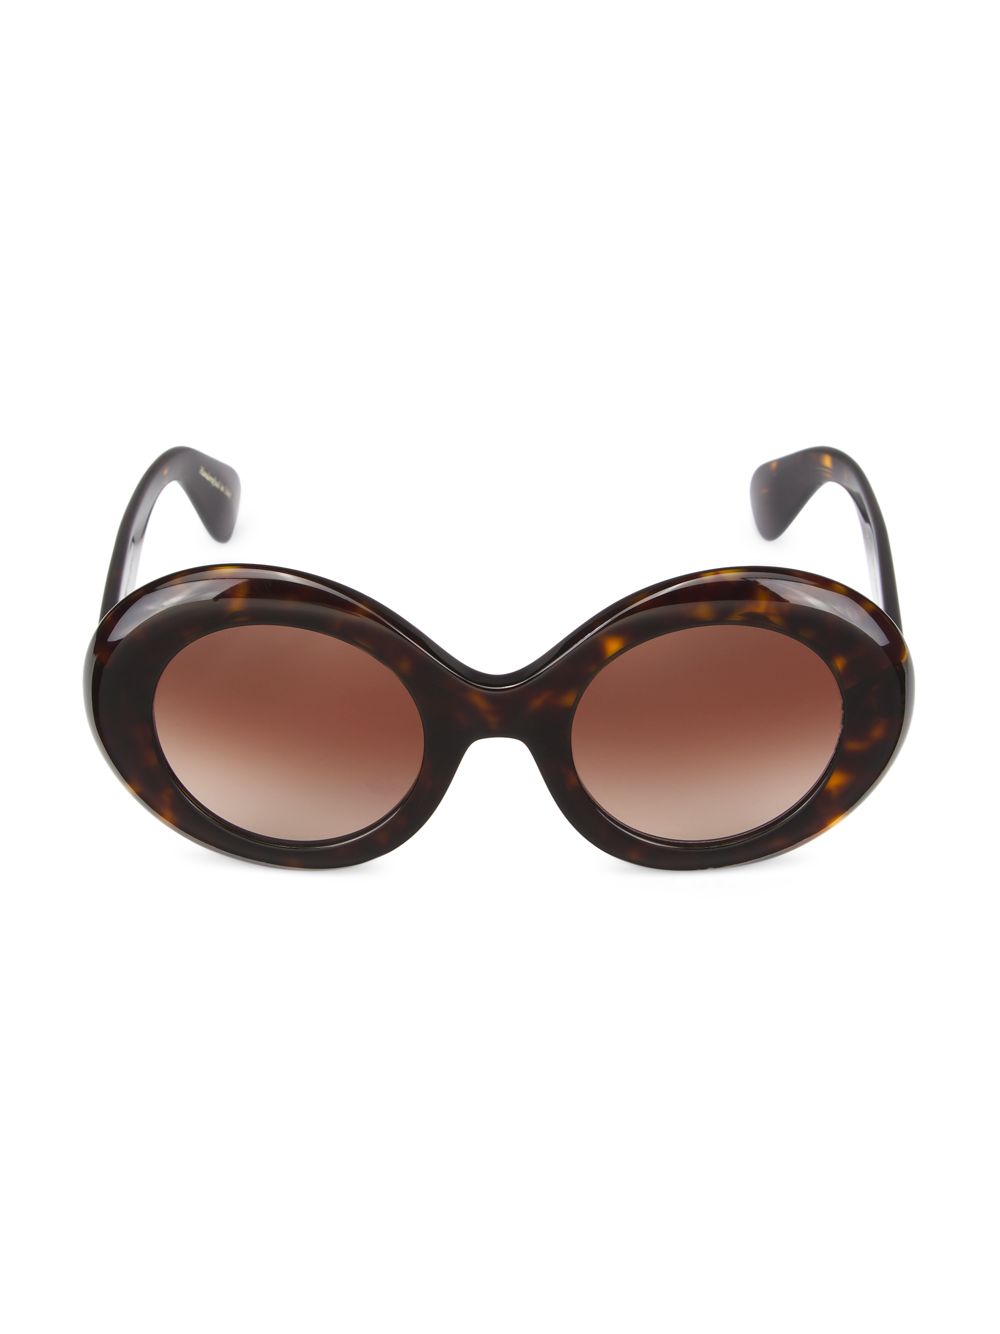 Овальные солнцезащитные очки Dejeanne 50MM Oliver Peoples, коричневый